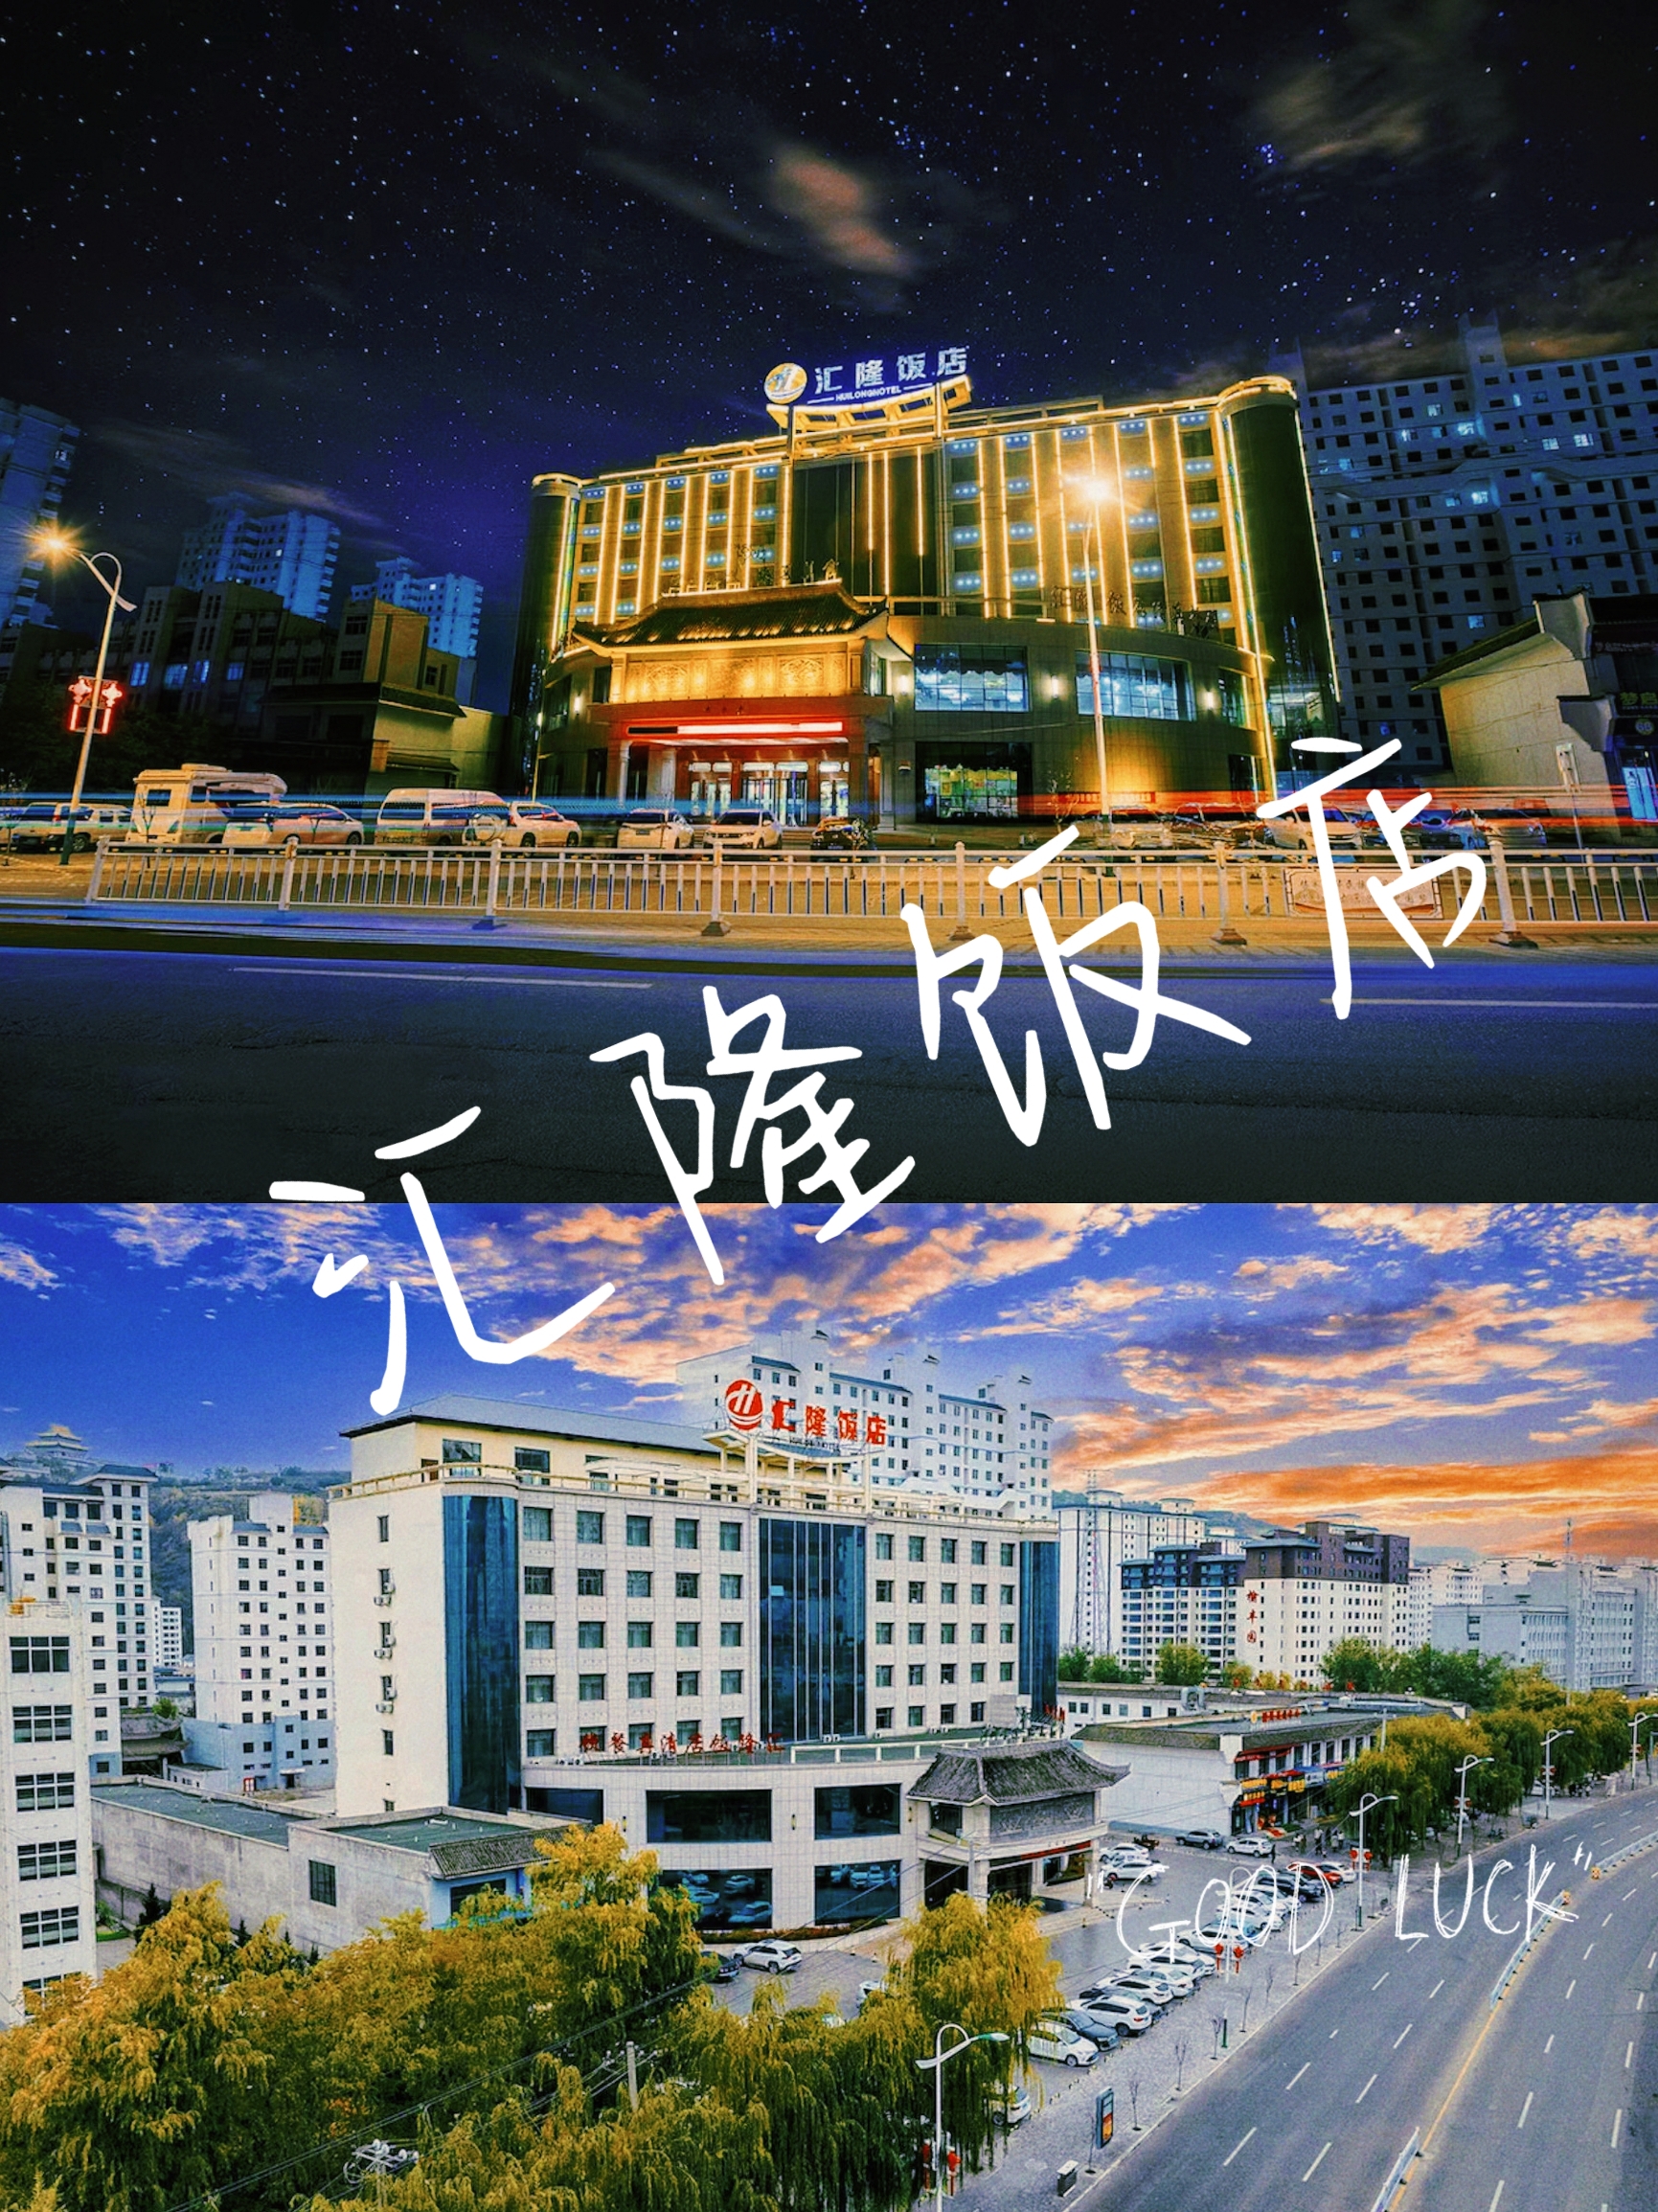 🛏【️酒店攻略】 📍详细地址：临夏县双城检察院对面 ⛱酒店环境： 1. 豪华：酒店带有豪华的气息，装